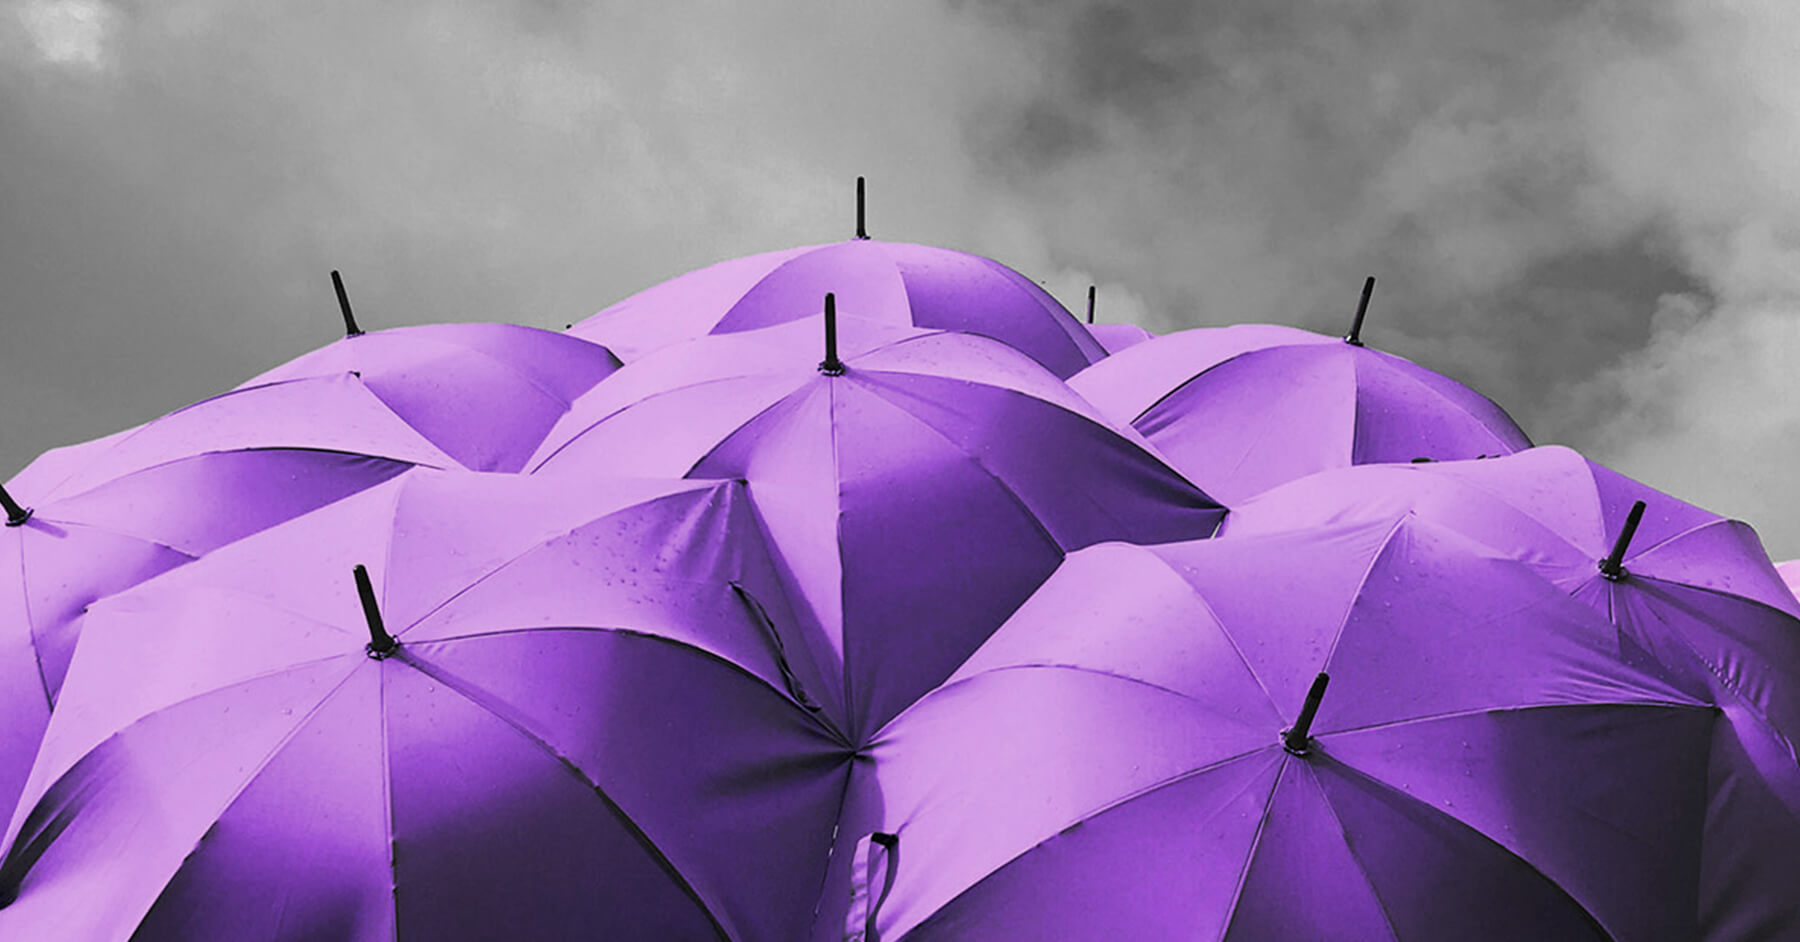 Purple umbrellas